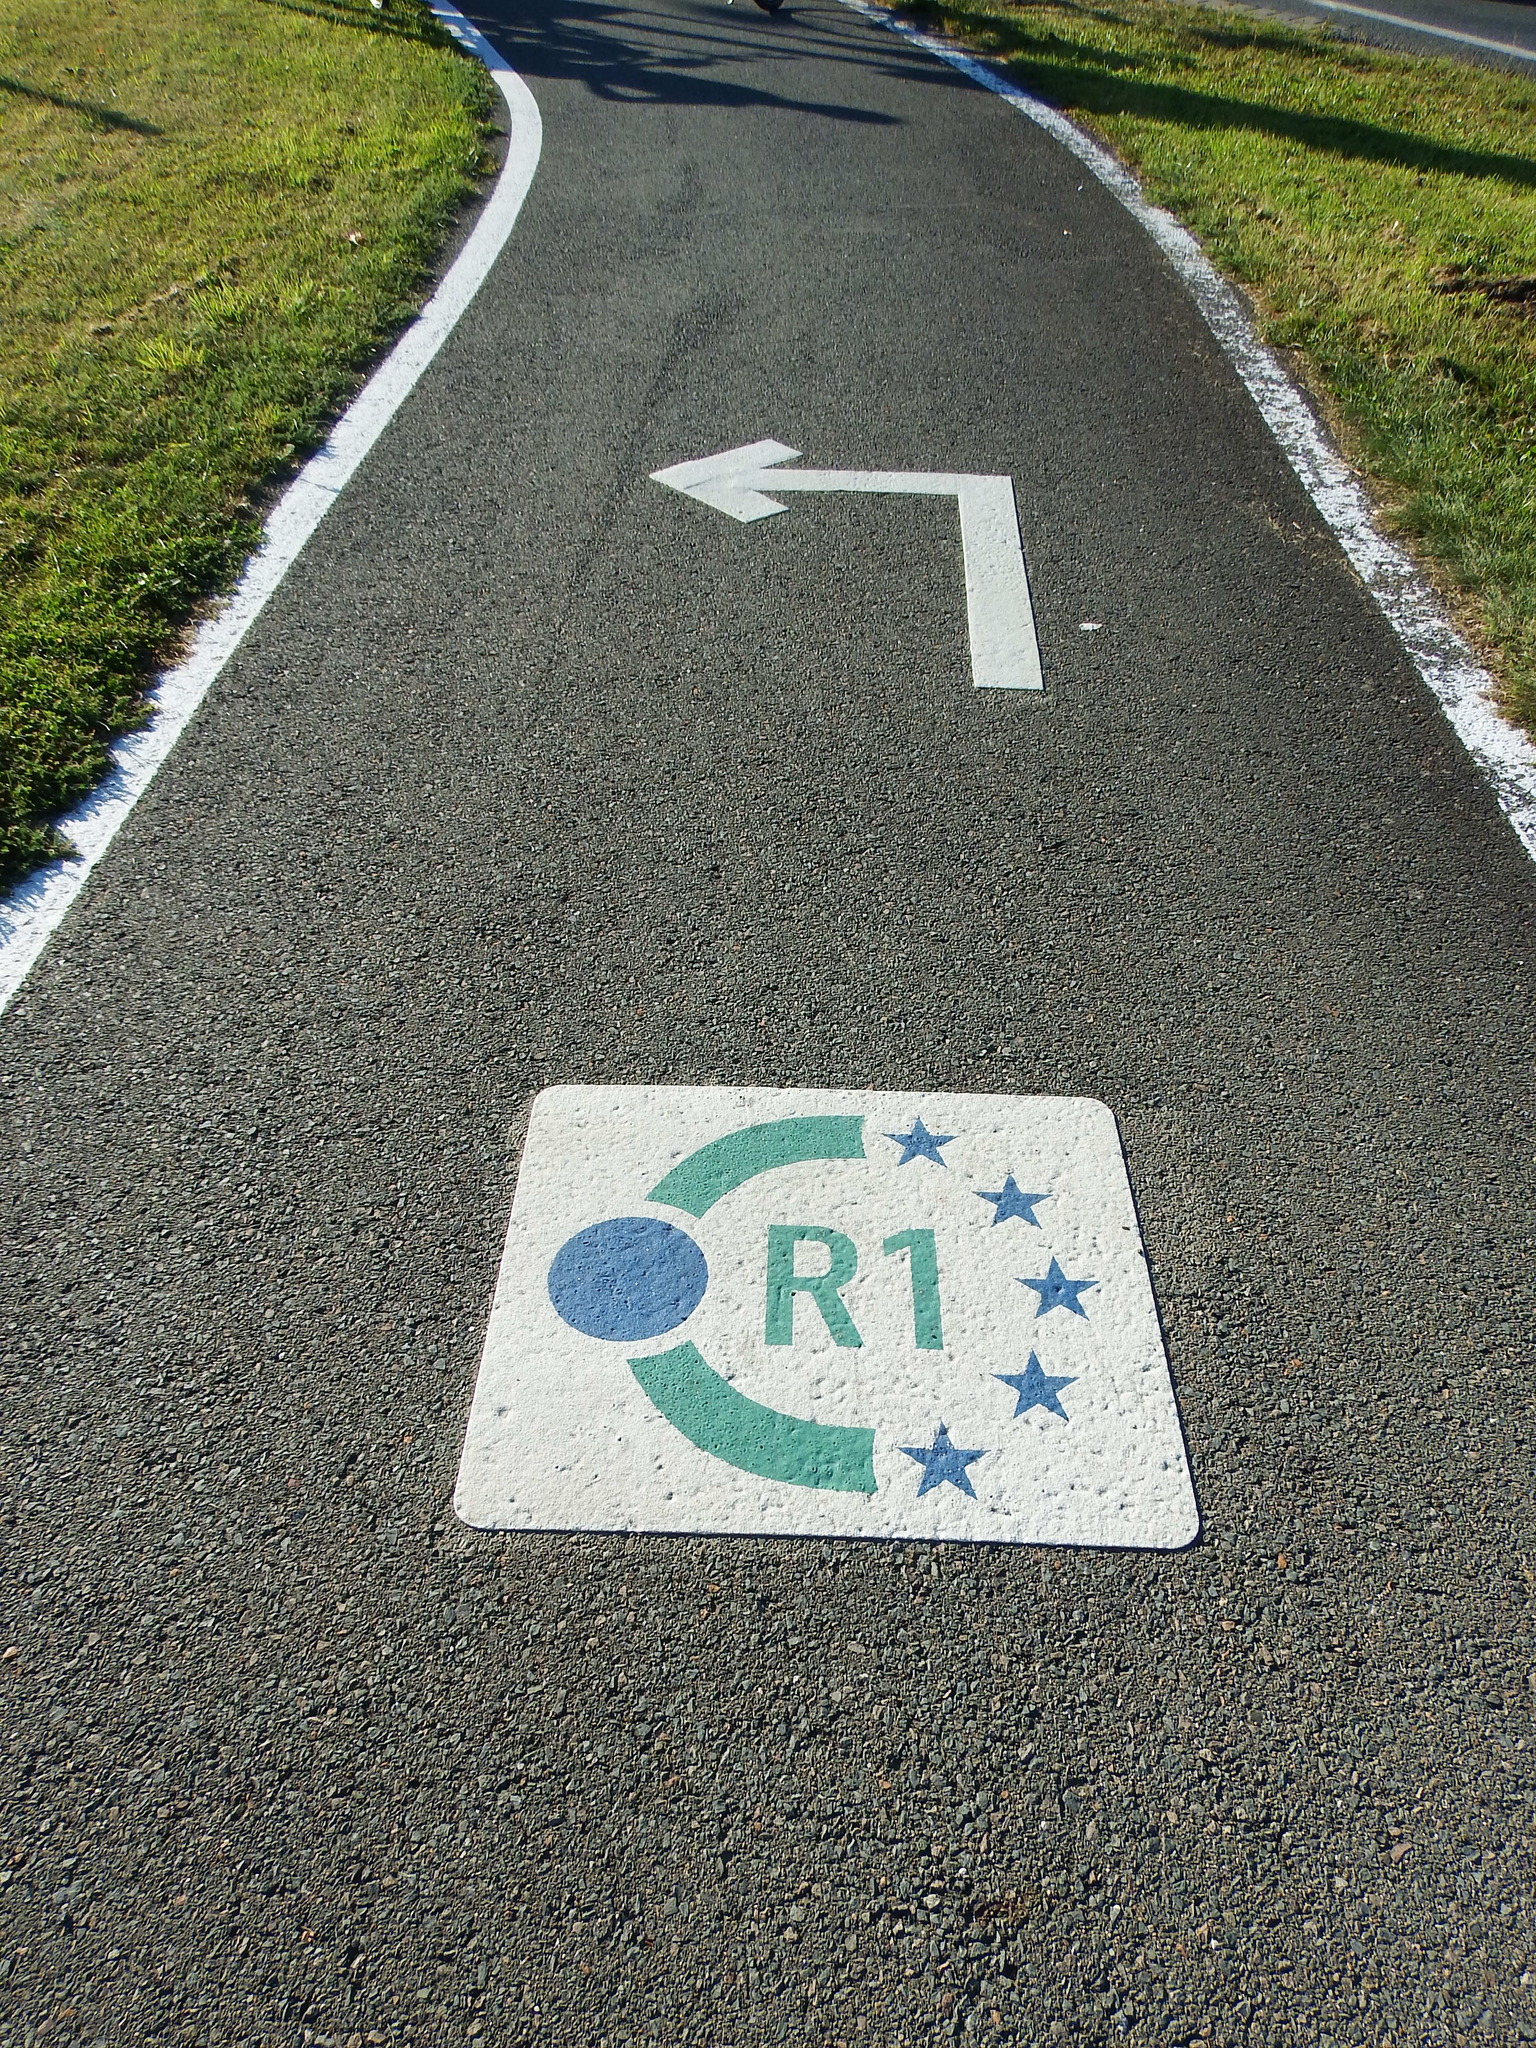 Europaradweg R1 - 48 km Teilabschnitt zwischen Ilsenburg und Thale